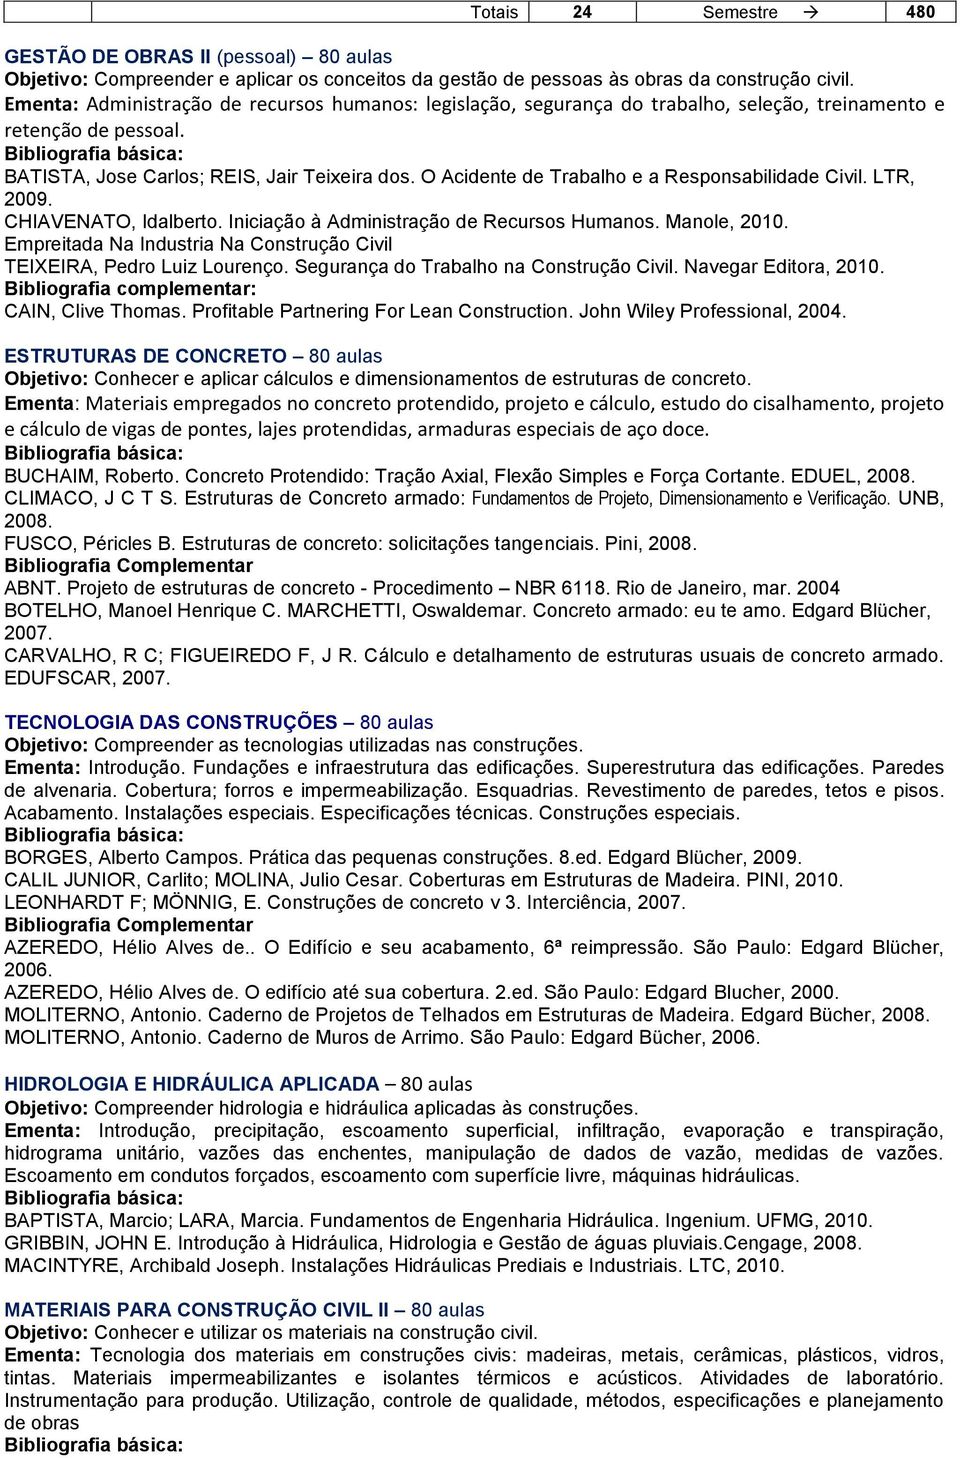 O Acidente de Trabalho e a Responsabilidade Civil. LTR, 2009. CHIAVENATO, Idalberto. Iniciação à Administração de Recursos Humanos. Manole, 2010.